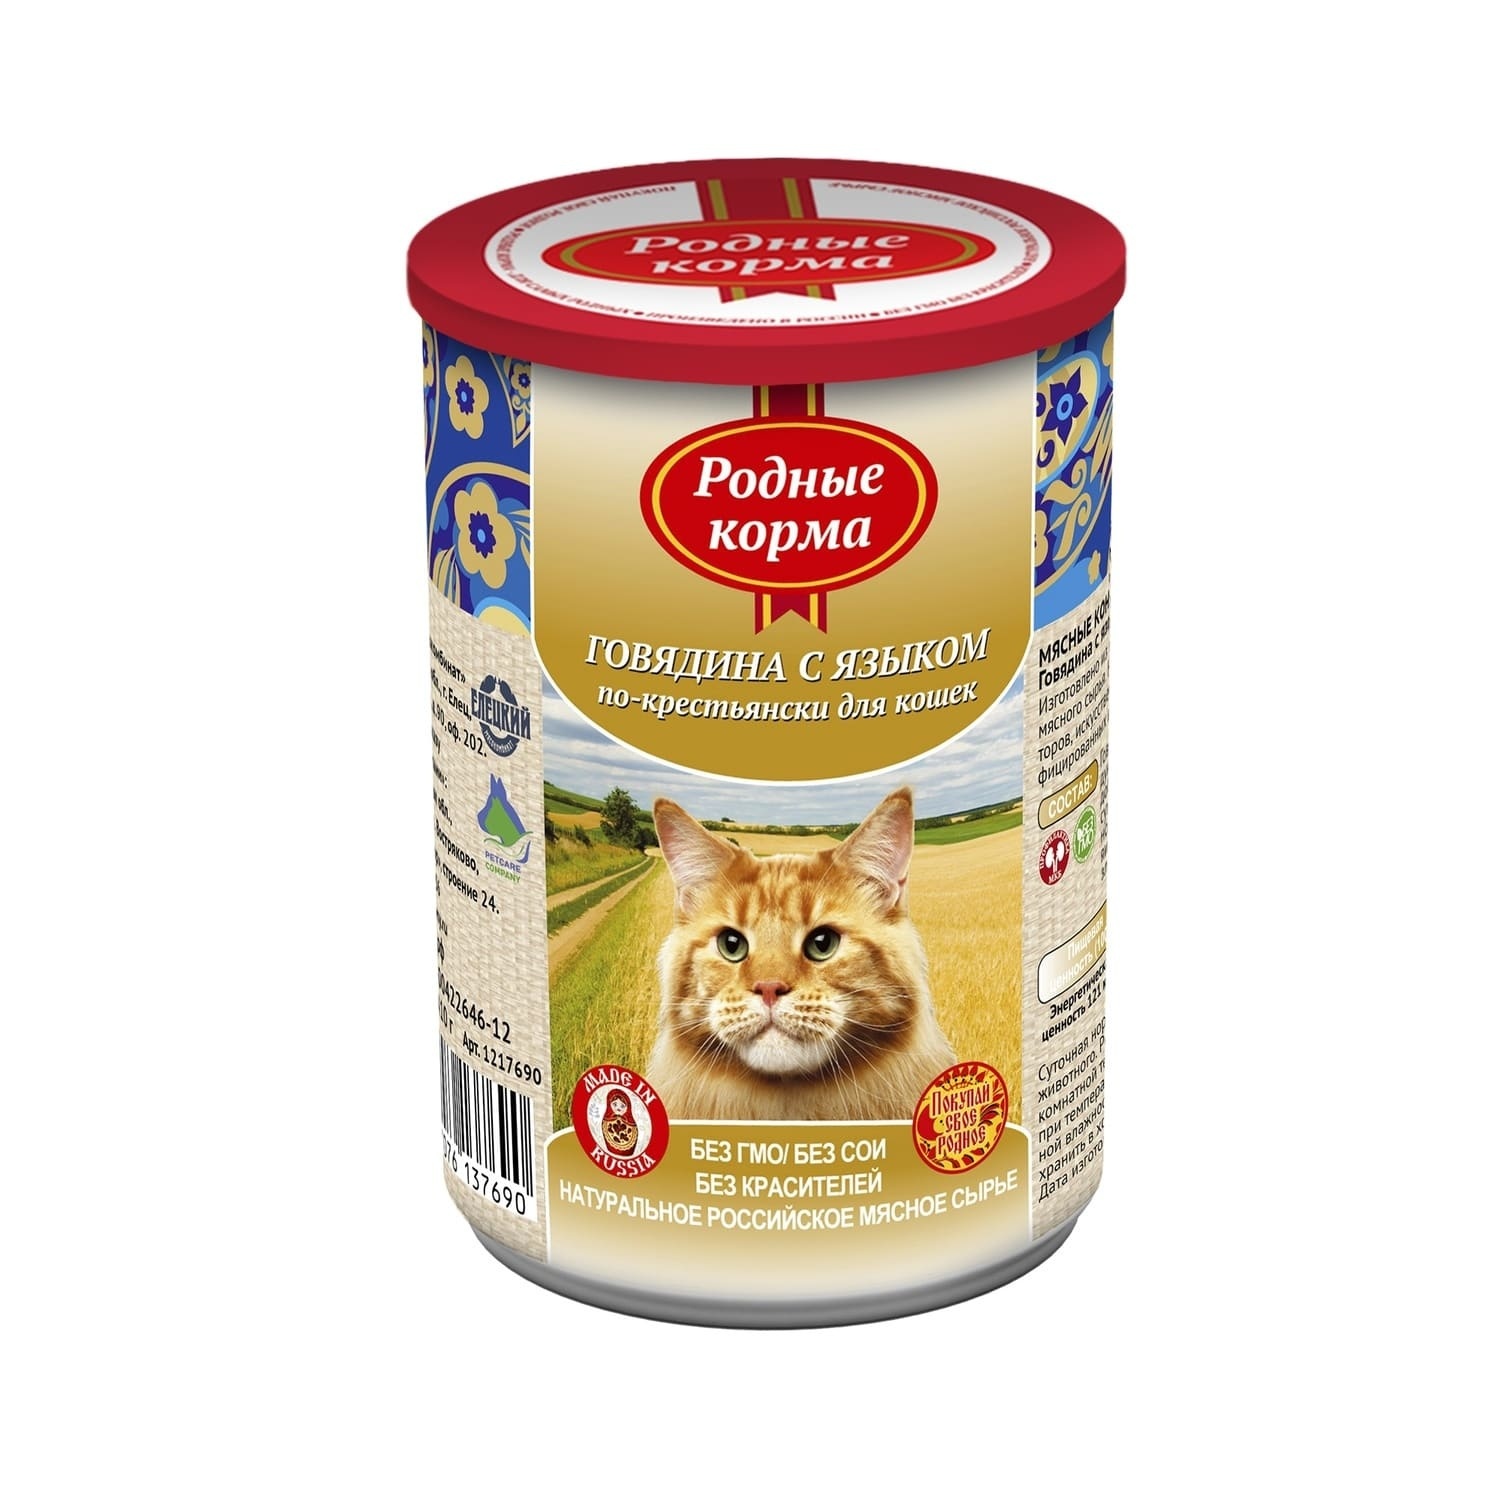 Родные корма Родные корма консервы для кошек, говядина с языком по-крестьянски (410 г) цена и фото